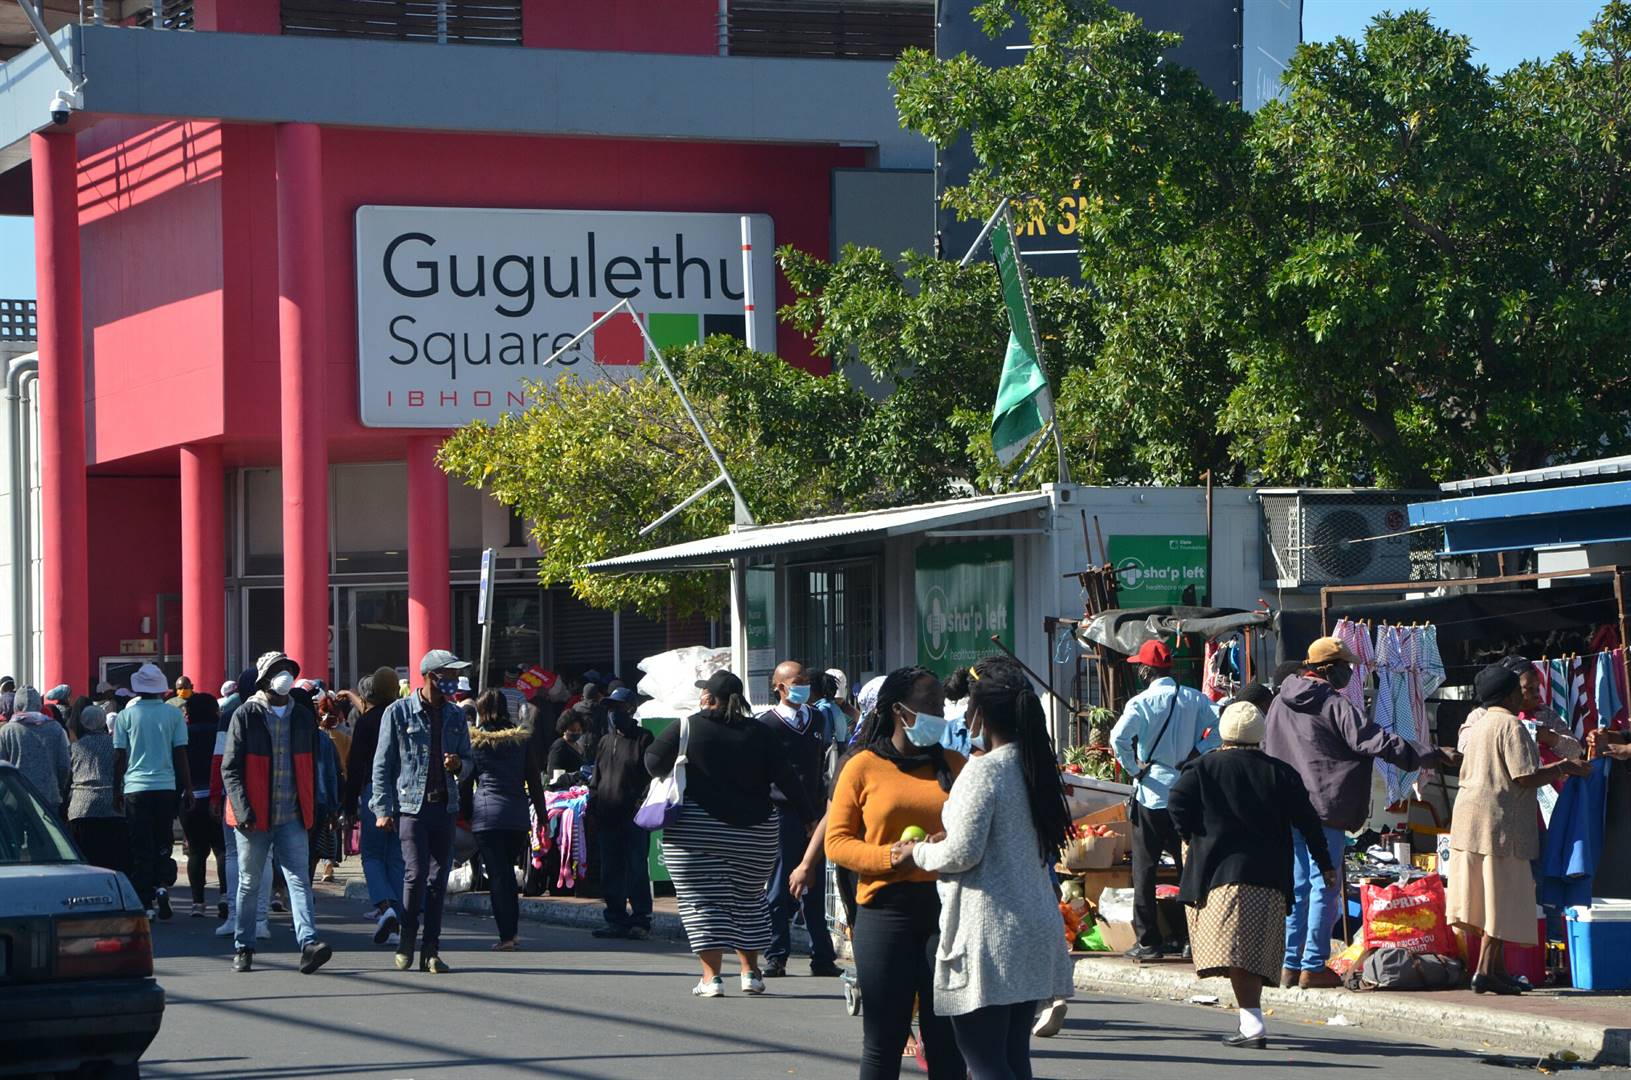 El propietario de Gugulethu Square se muestra optimista sobre la disminución de las vacantes y la demanda de los minoristas que cotizan en JSE